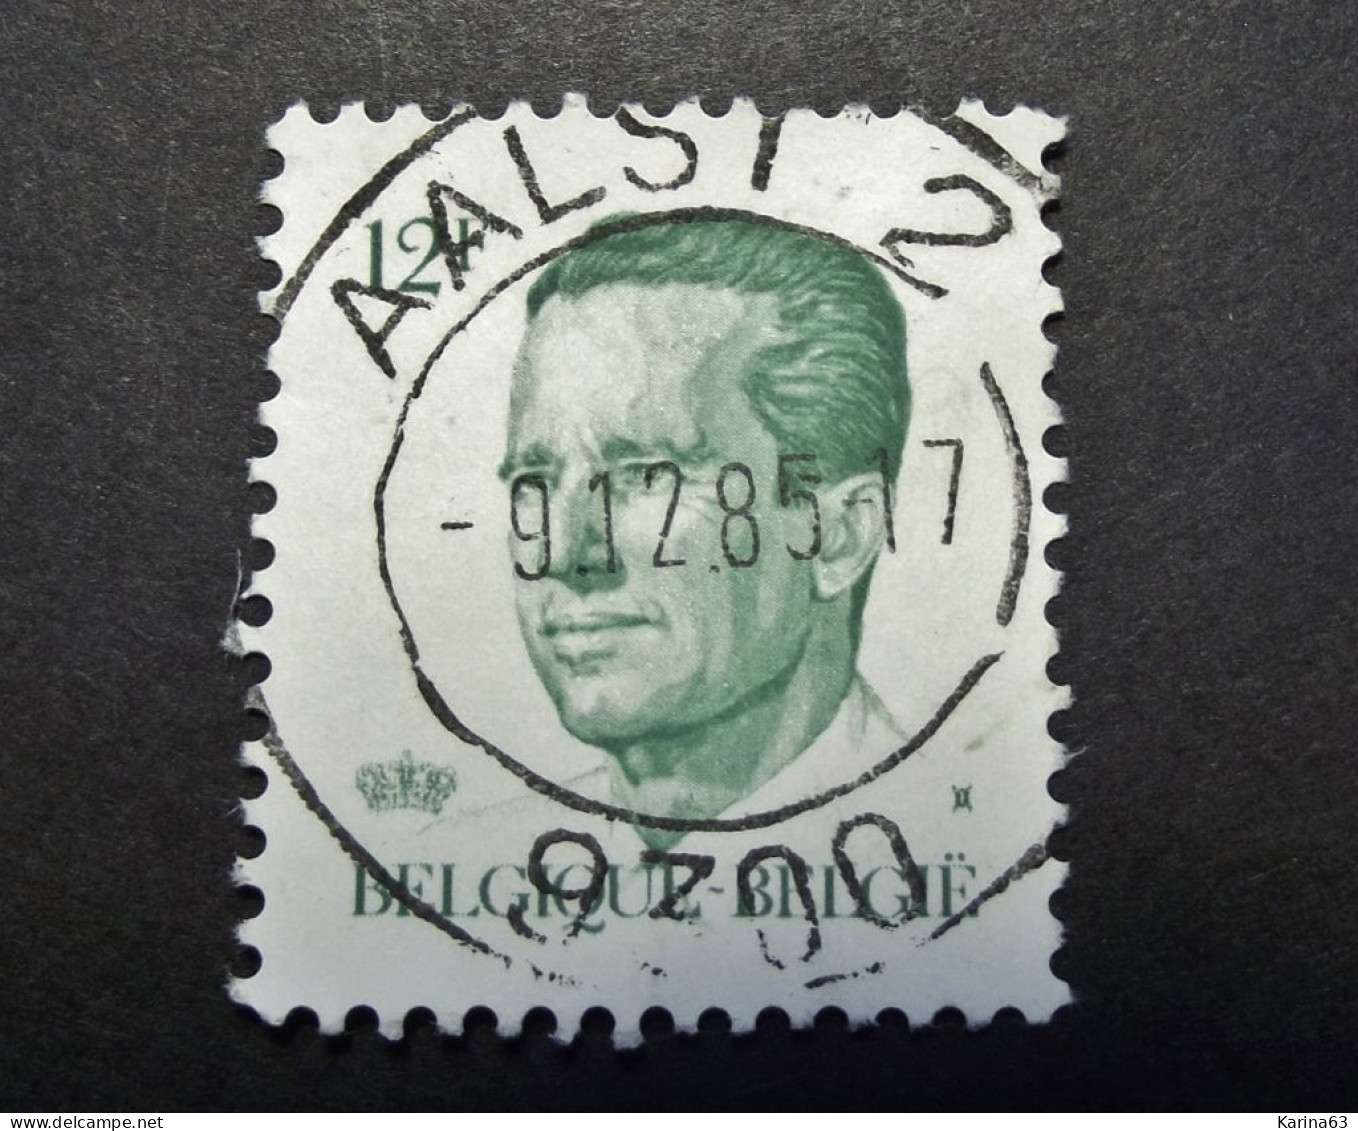 Belgie Belgique - 1984  OPB/COB N° 2113 ( 1 Value ) Koning Boudewijn ' Type Velghe'  Obl. Aalst 2 - Used Stamps